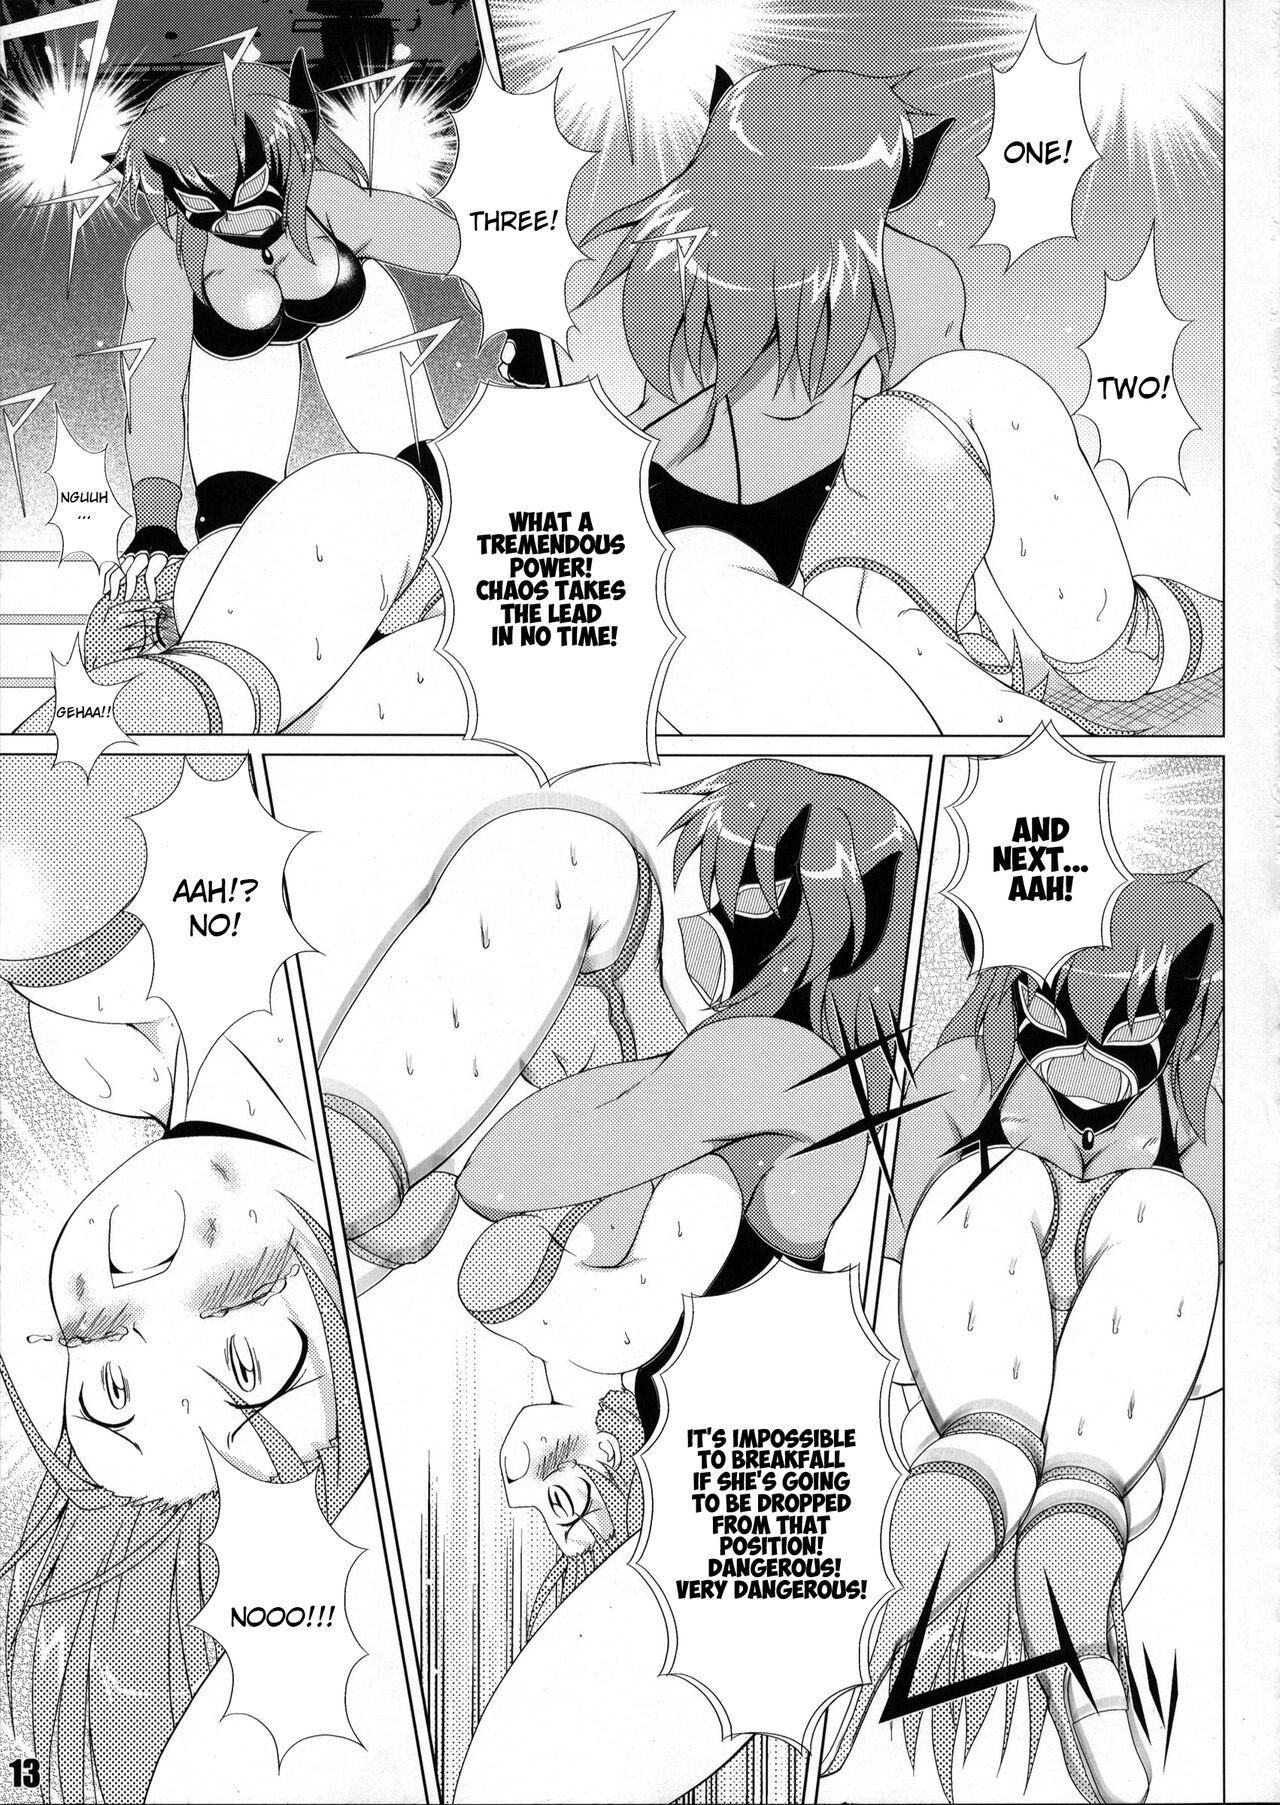 Mother fuck (COMIC1☆6) [Soket=Pocket (Soket)] Mighty Yukiko vs Dark Star Chaos (FALLIN' ANGELS4 (WRESTLE ANGELS)) - Wrestle angels Teenporno - Page 9